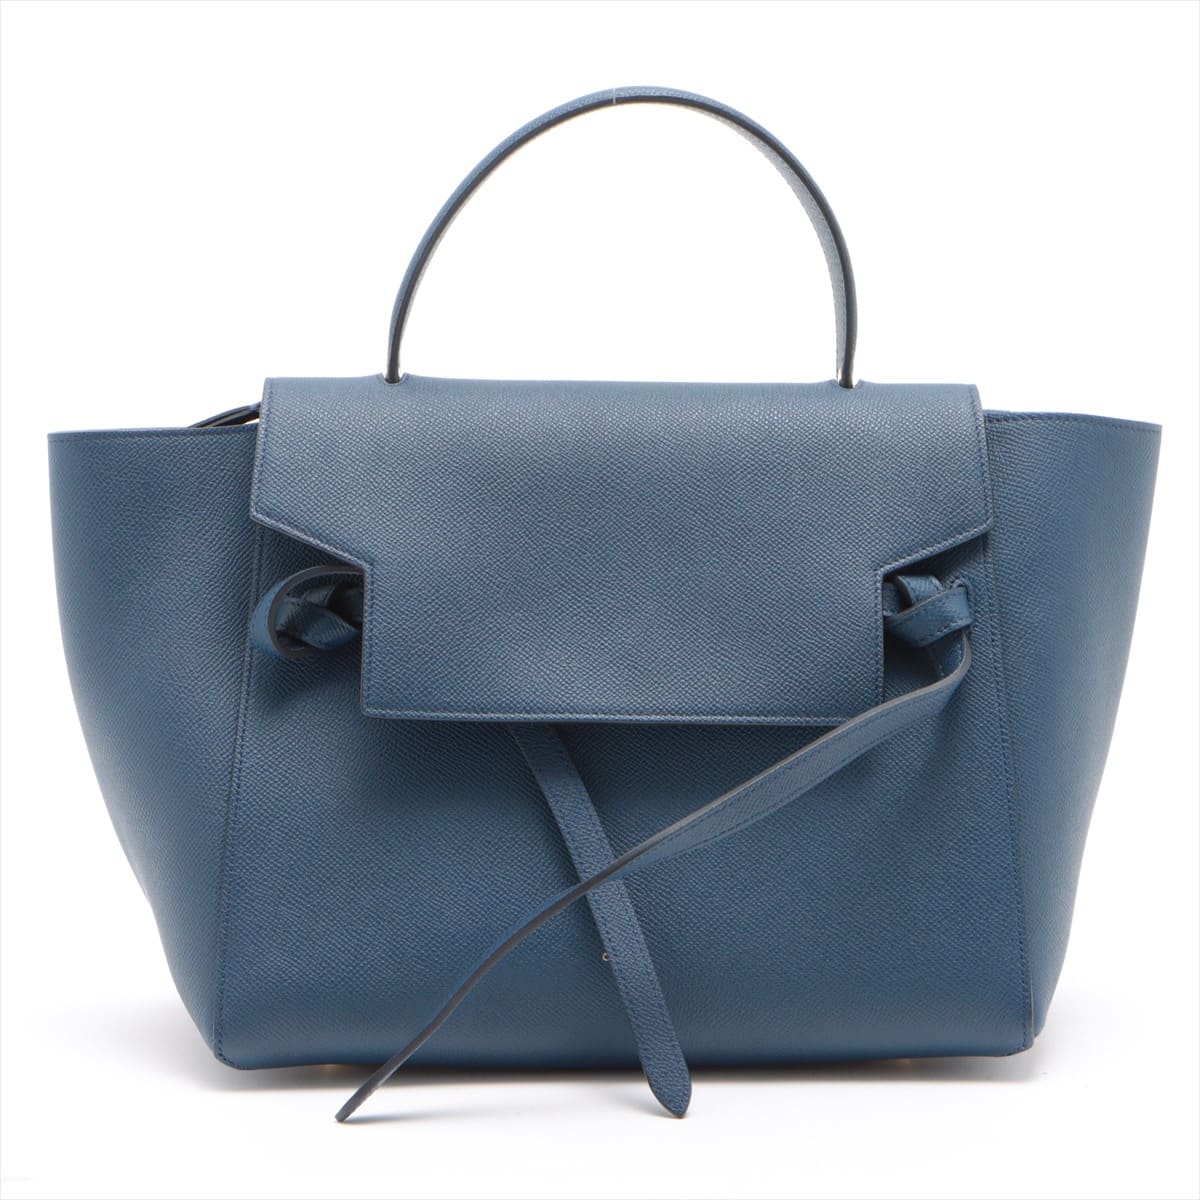 CELINE Belt Bag Mini Leather 2way handbag Navy blue